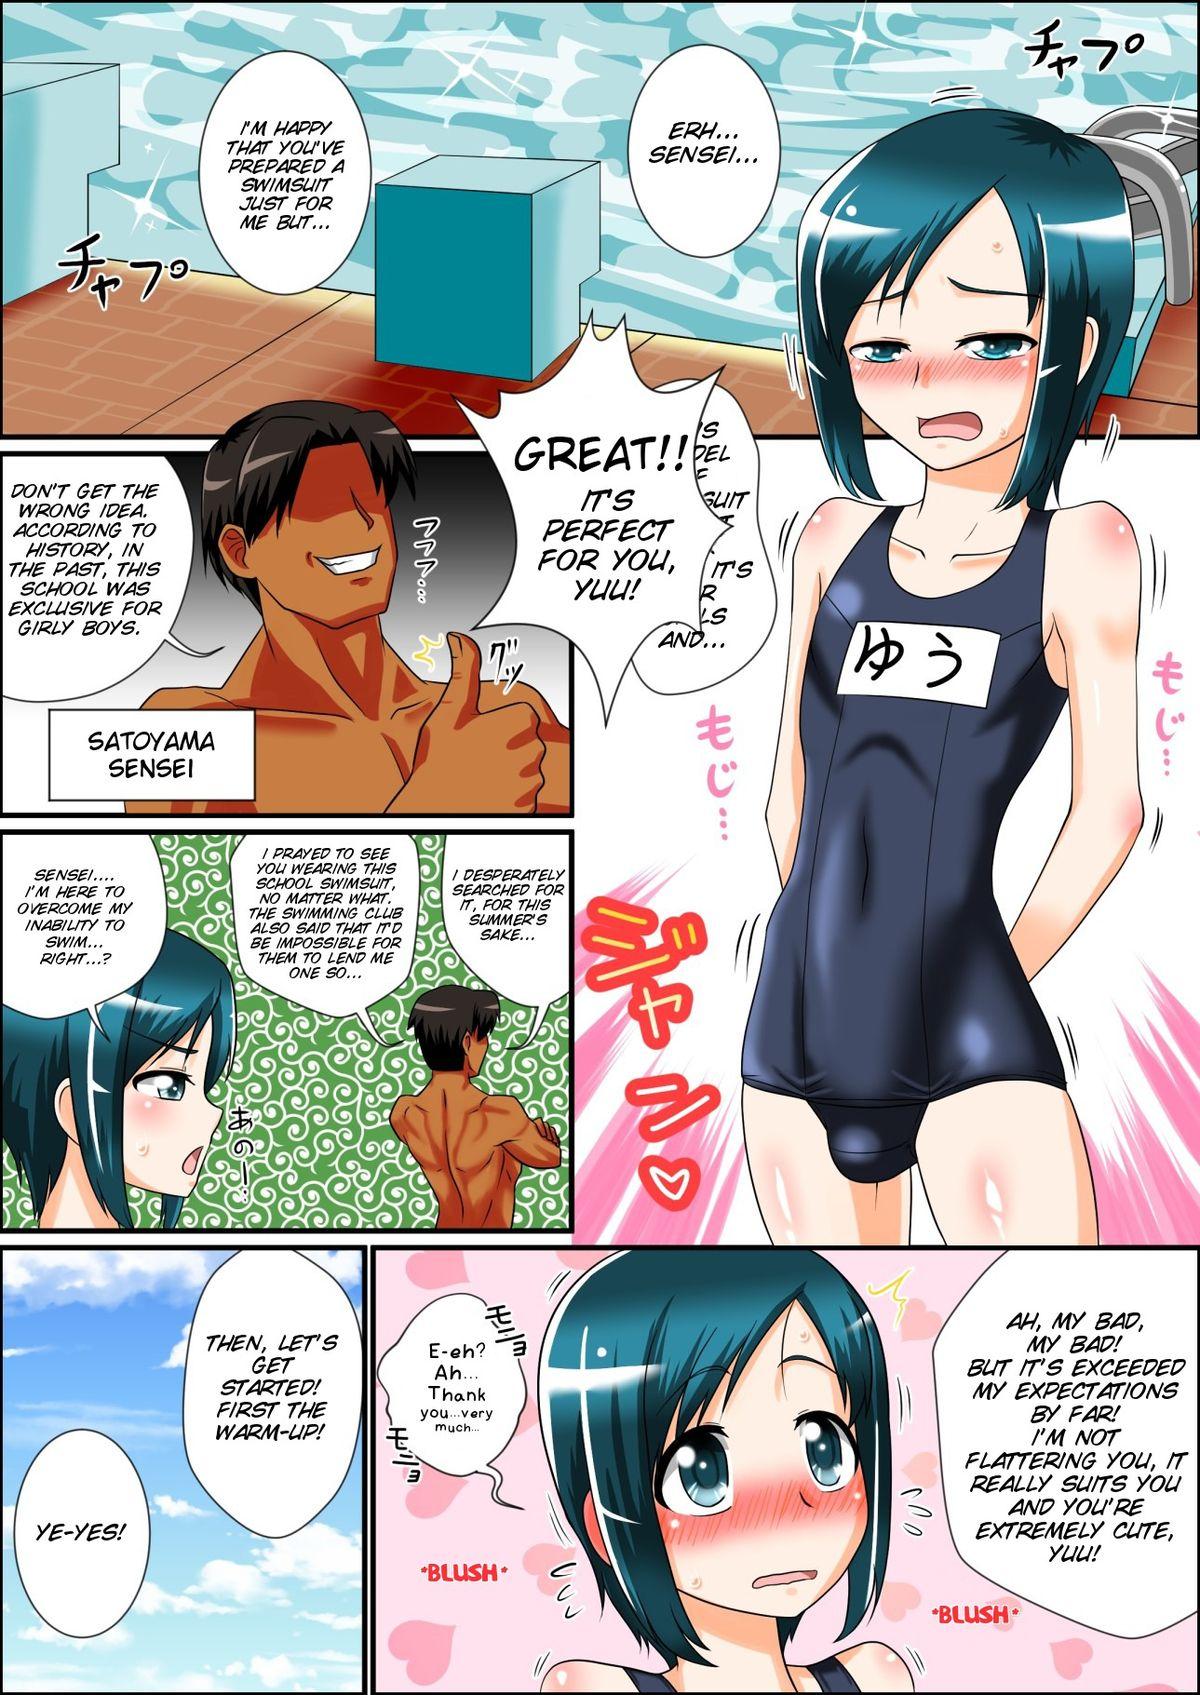 Chaturbate Boku to Sensei to Manatsu no Pool Side Amateurs - Page 4